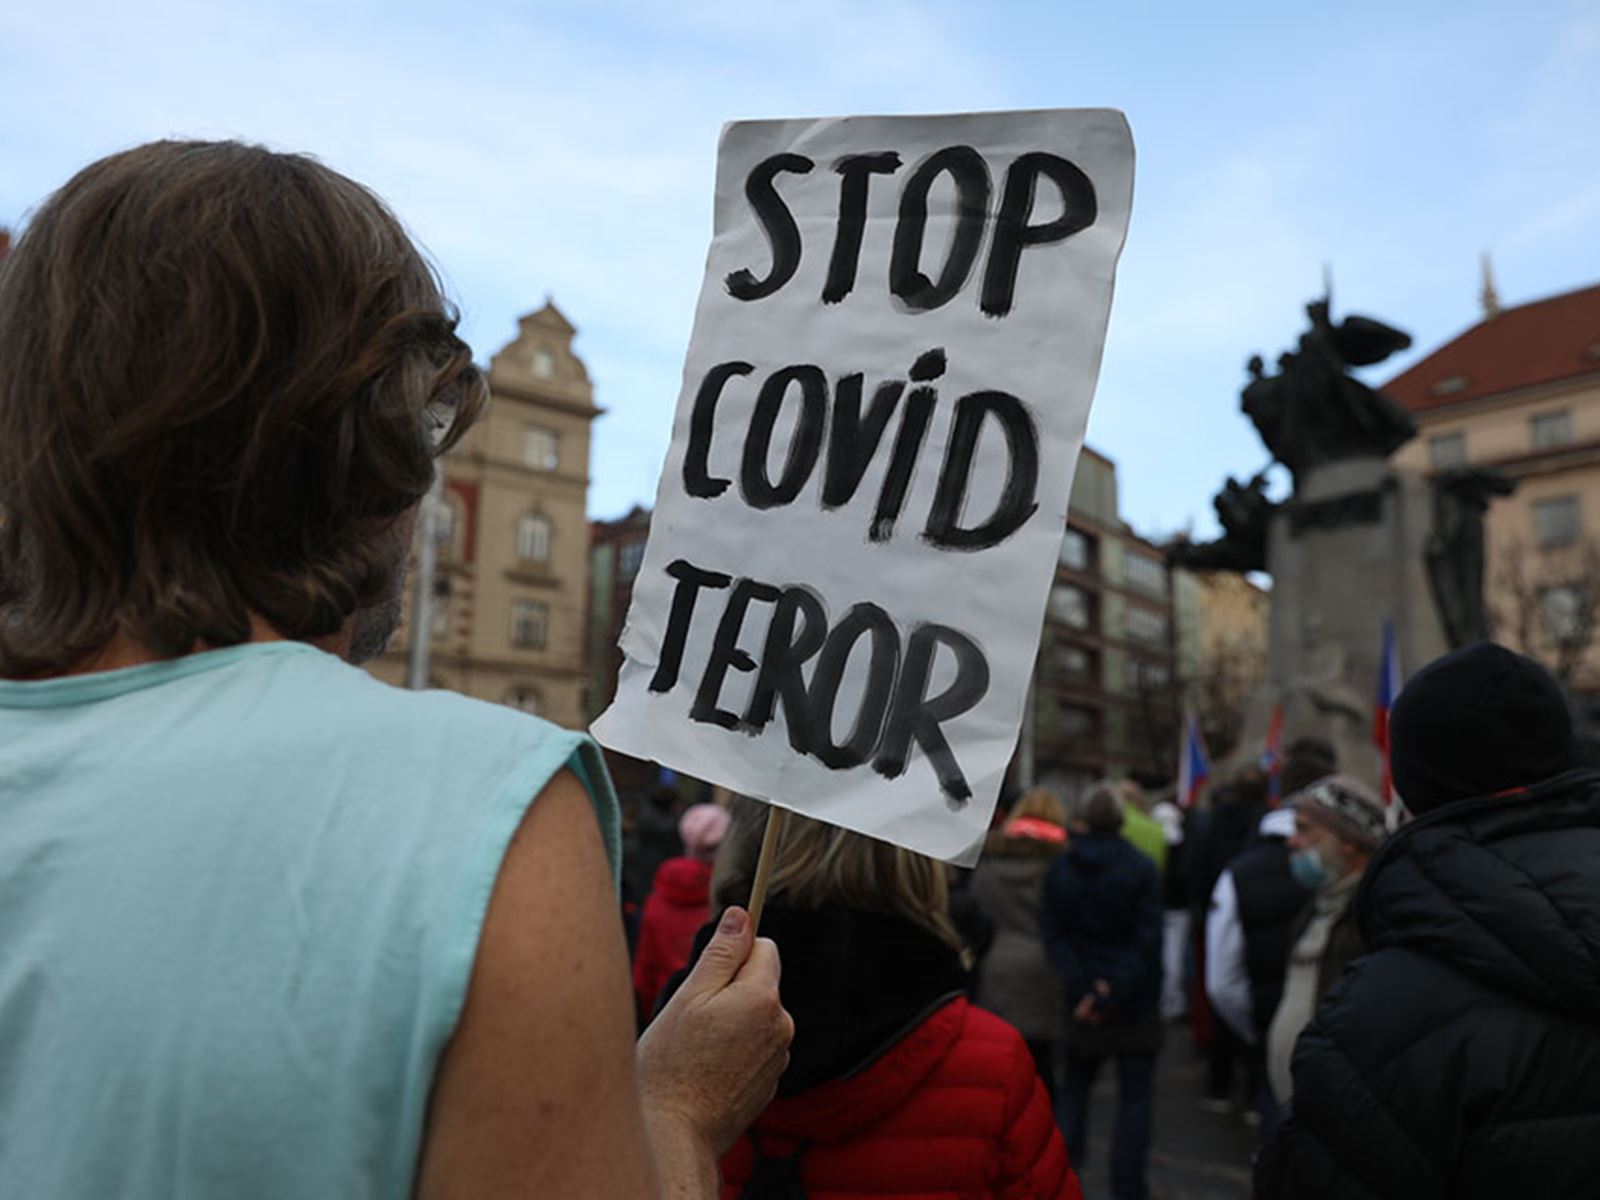 Stop covid teror | ParlamentniListy.cz – politika ze všech stran